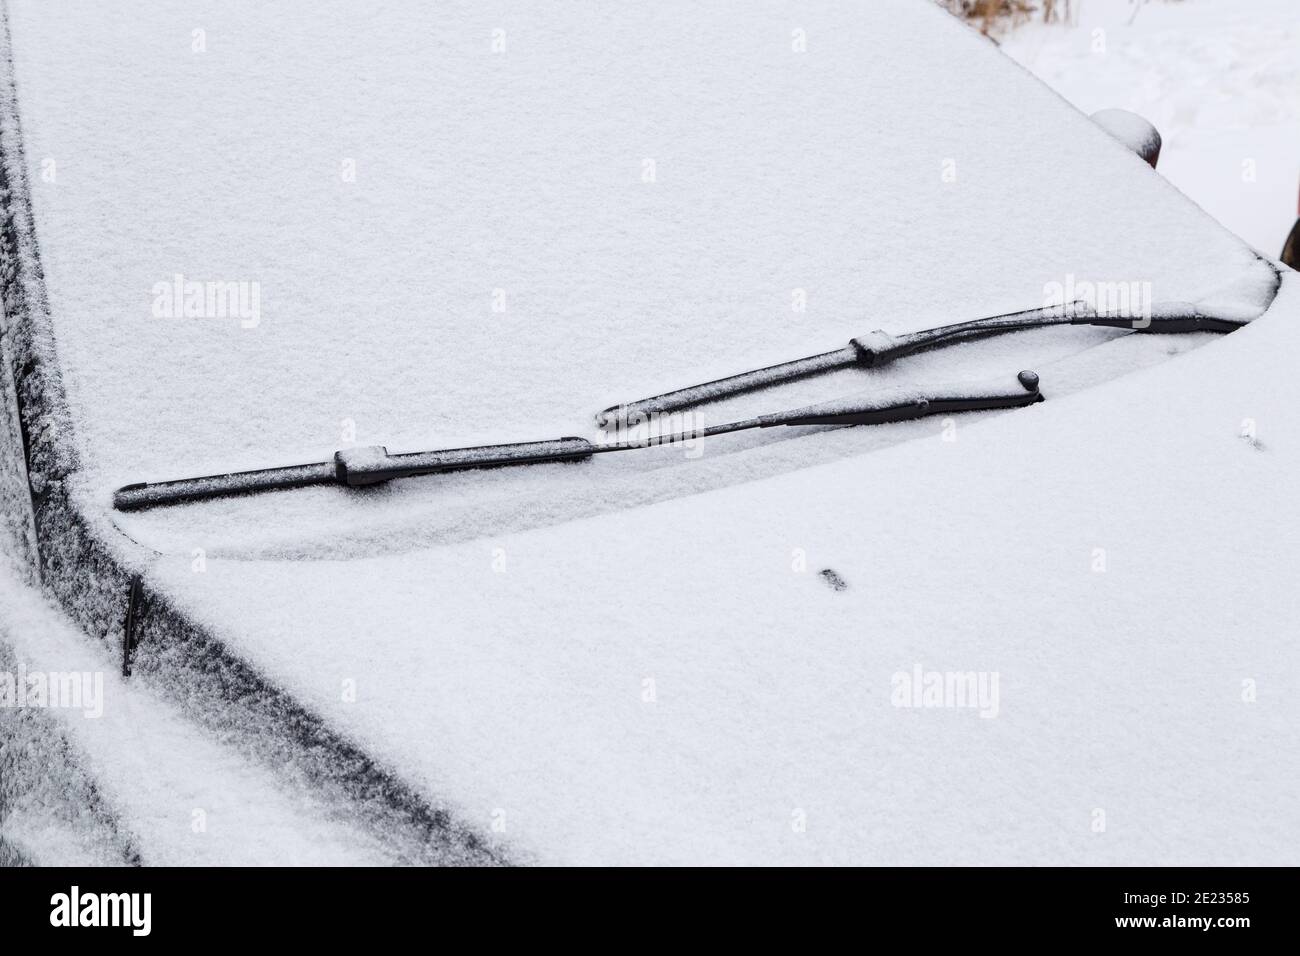 Windschutzscheibe und Scheibenwischer, die bei bewölktem Winterwetter  gefroren und mit Schnee bedeckt sind Stockfotografie - Alamy